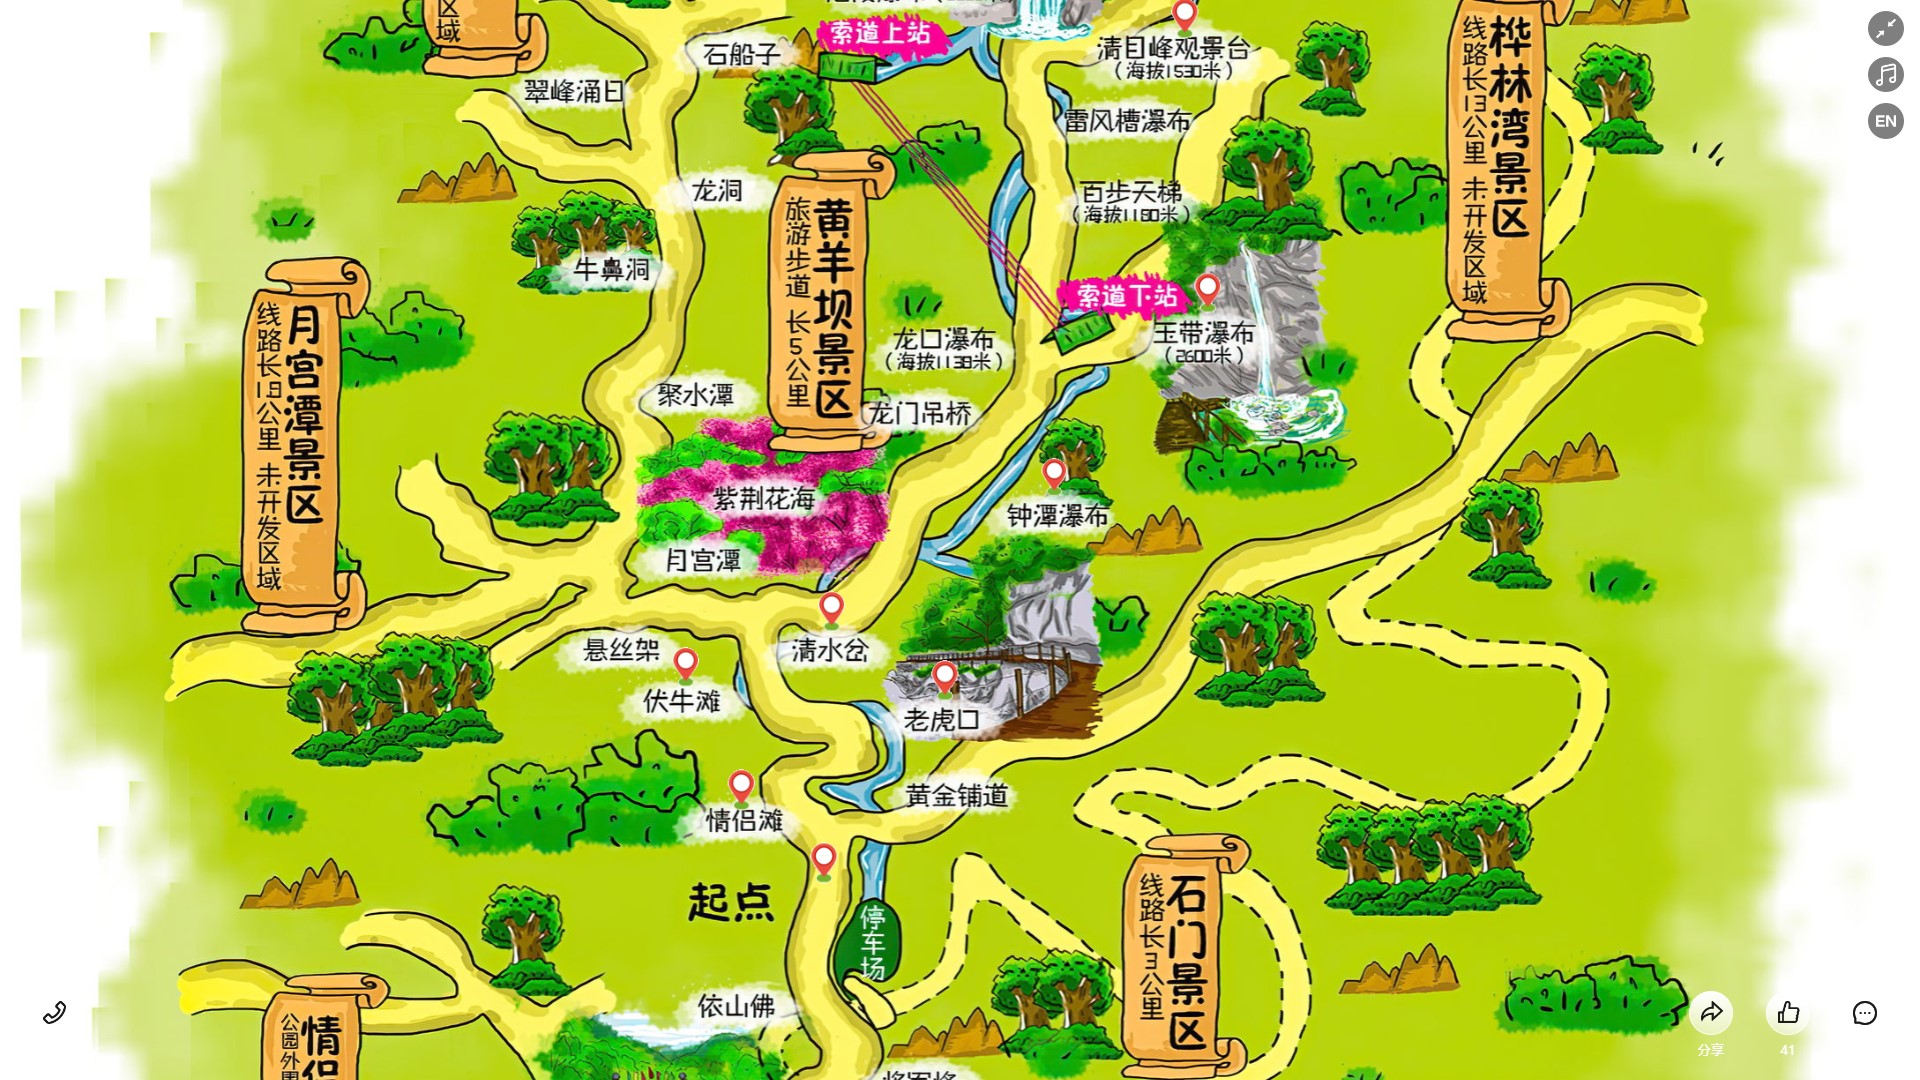 毛道乡景区导览系统